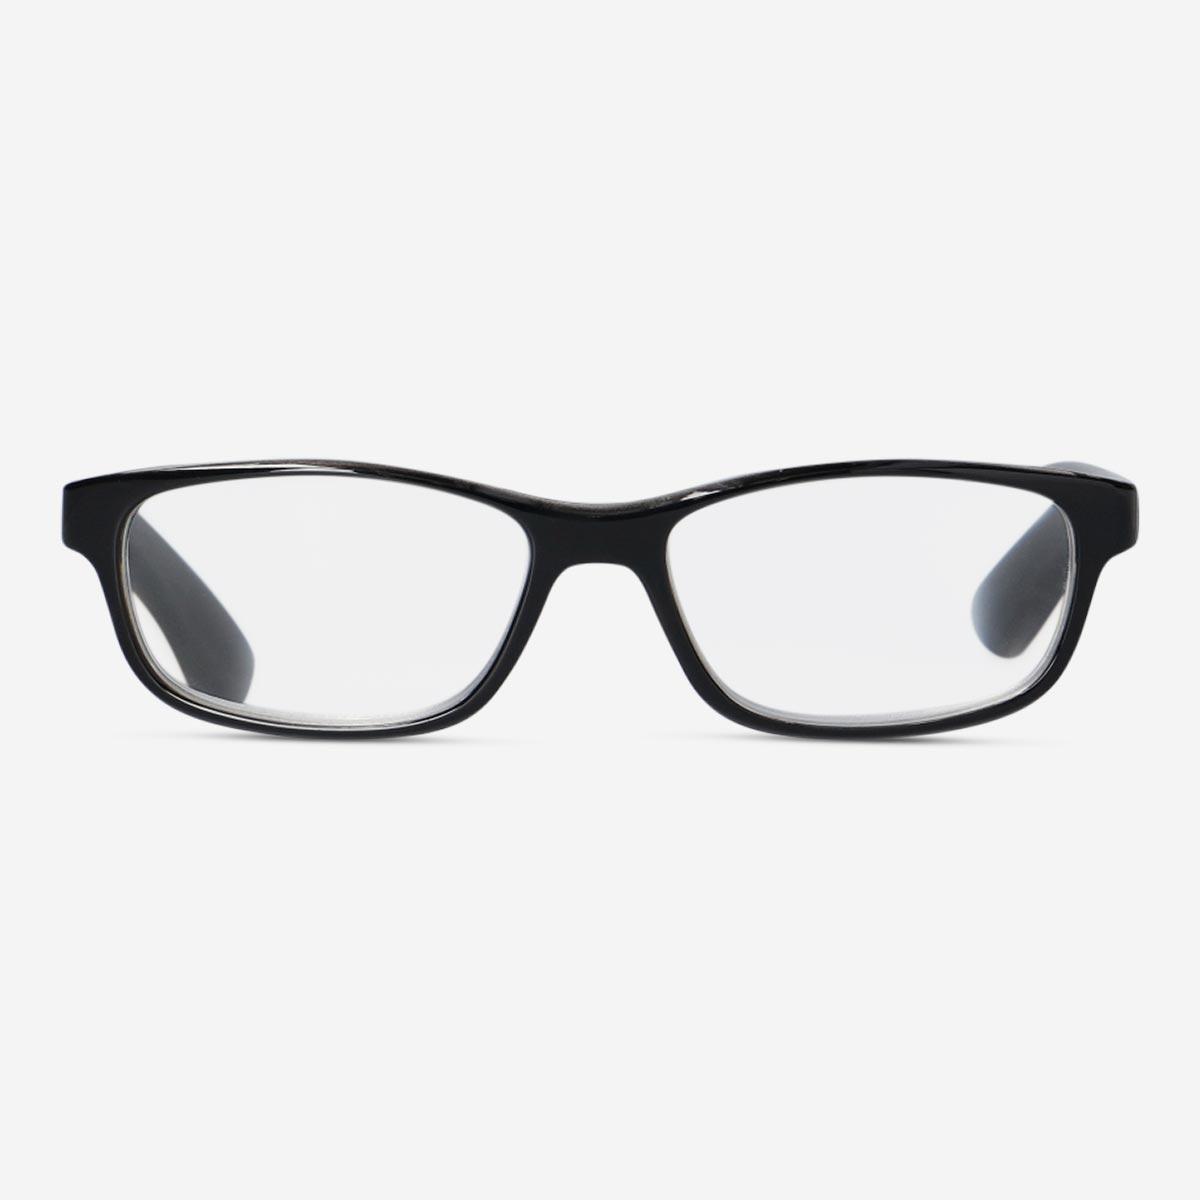 Black reading glasses. + 2.0